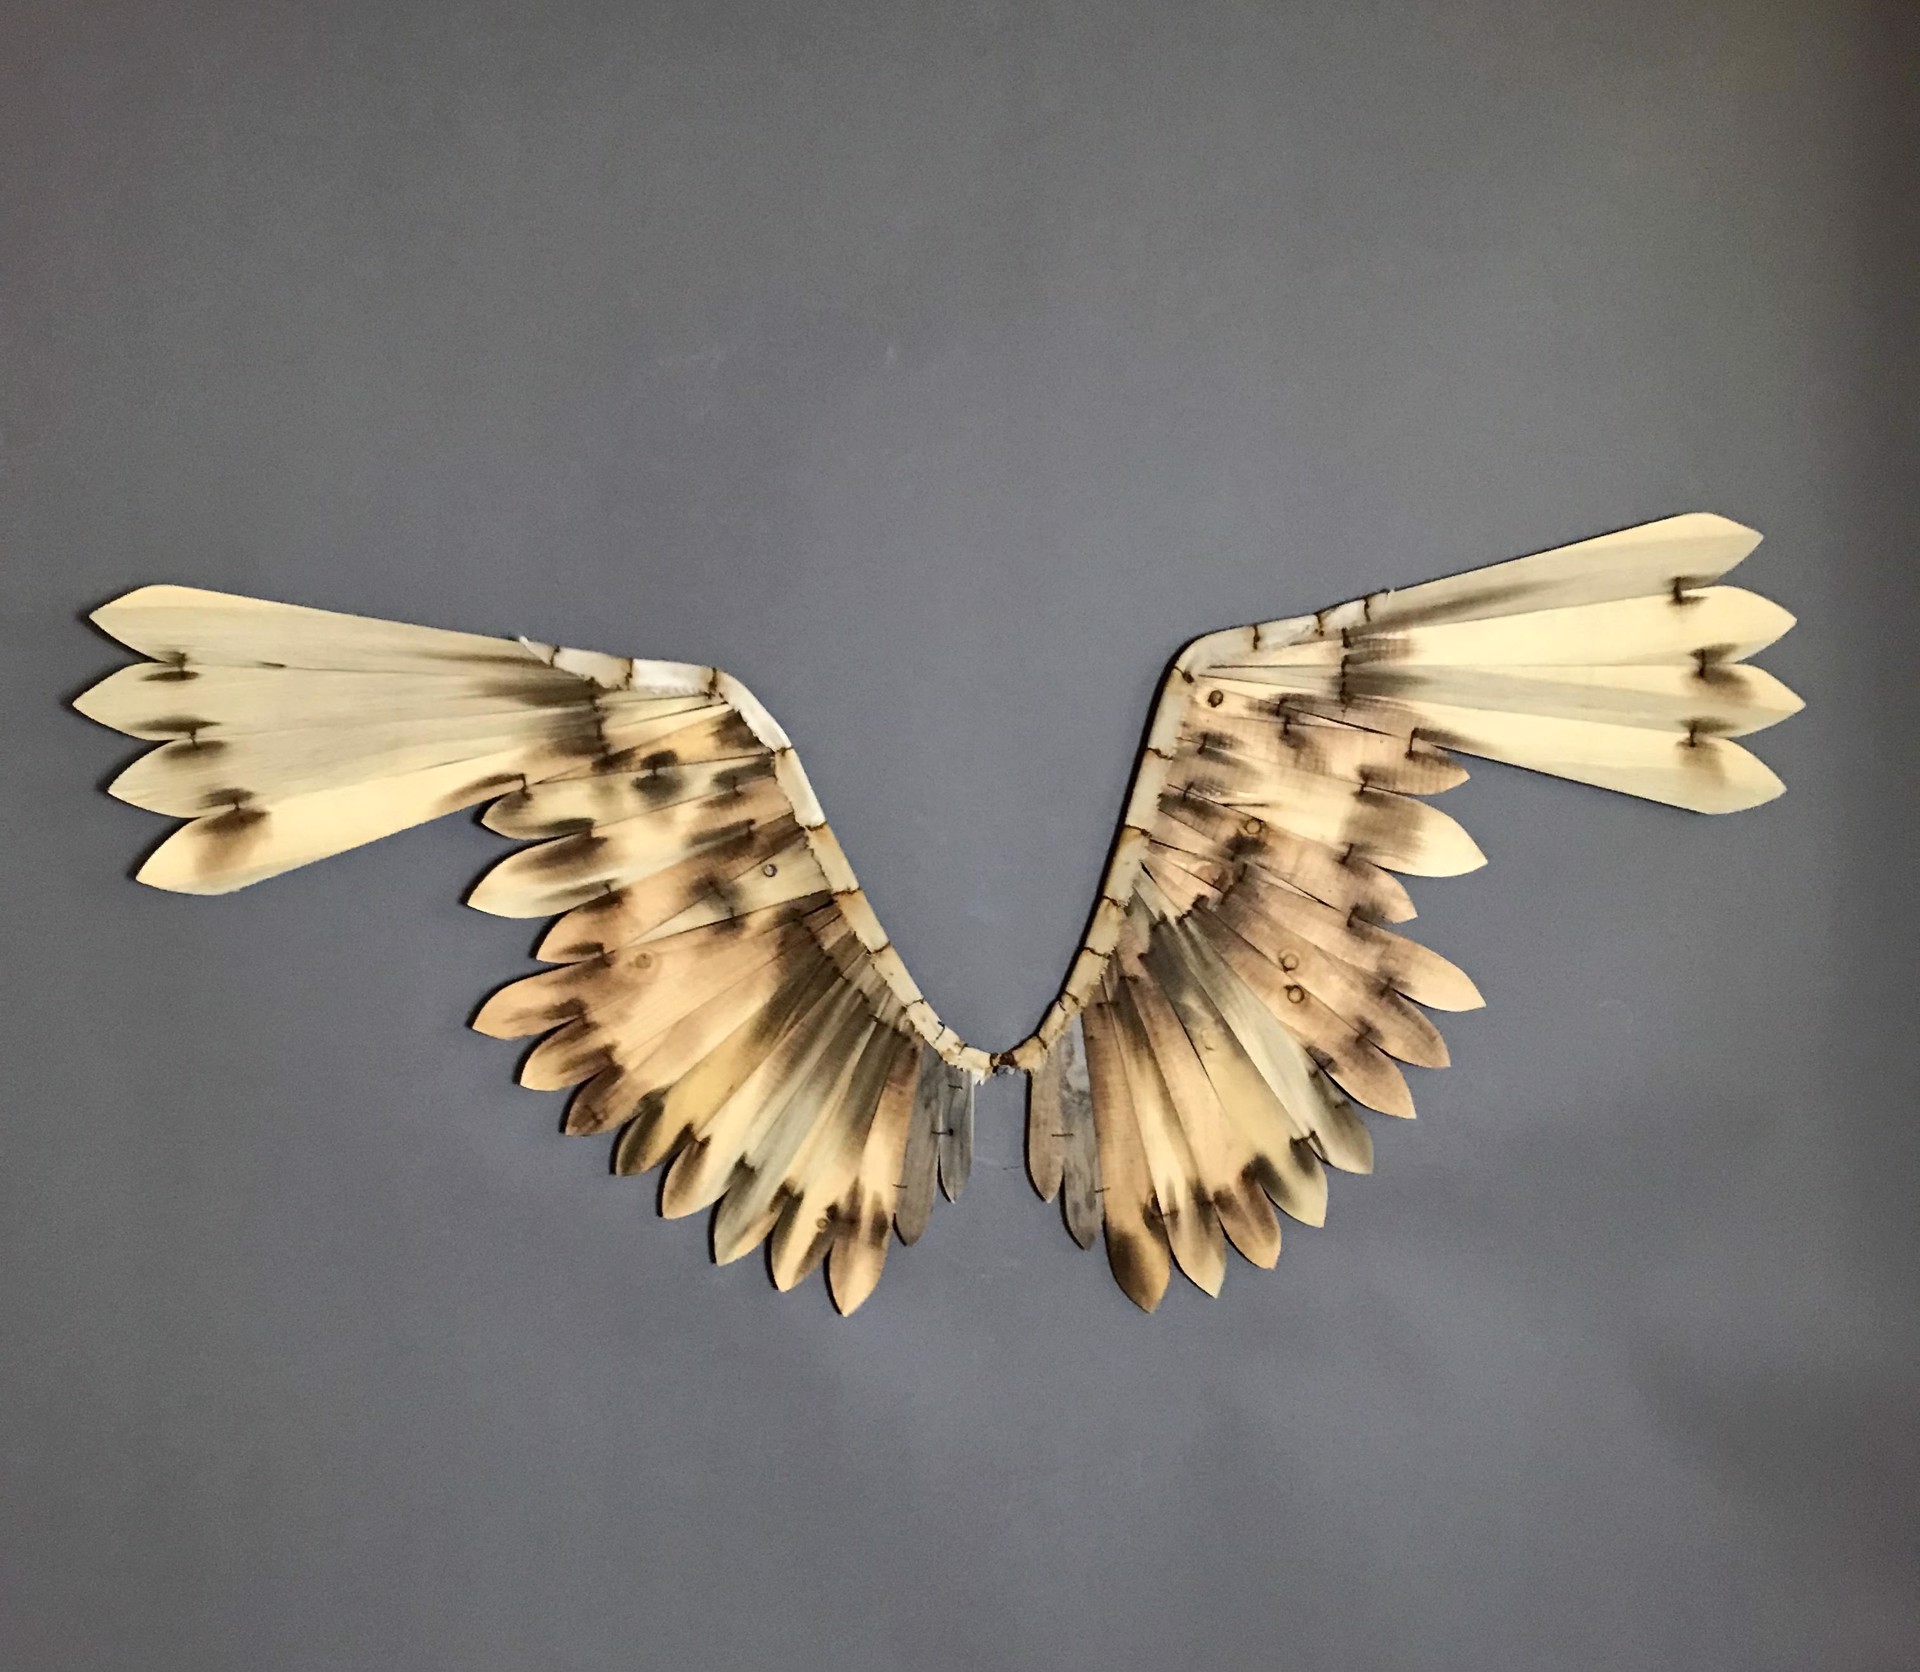 Great Horned Owl Wings by Geoffrey Gorman